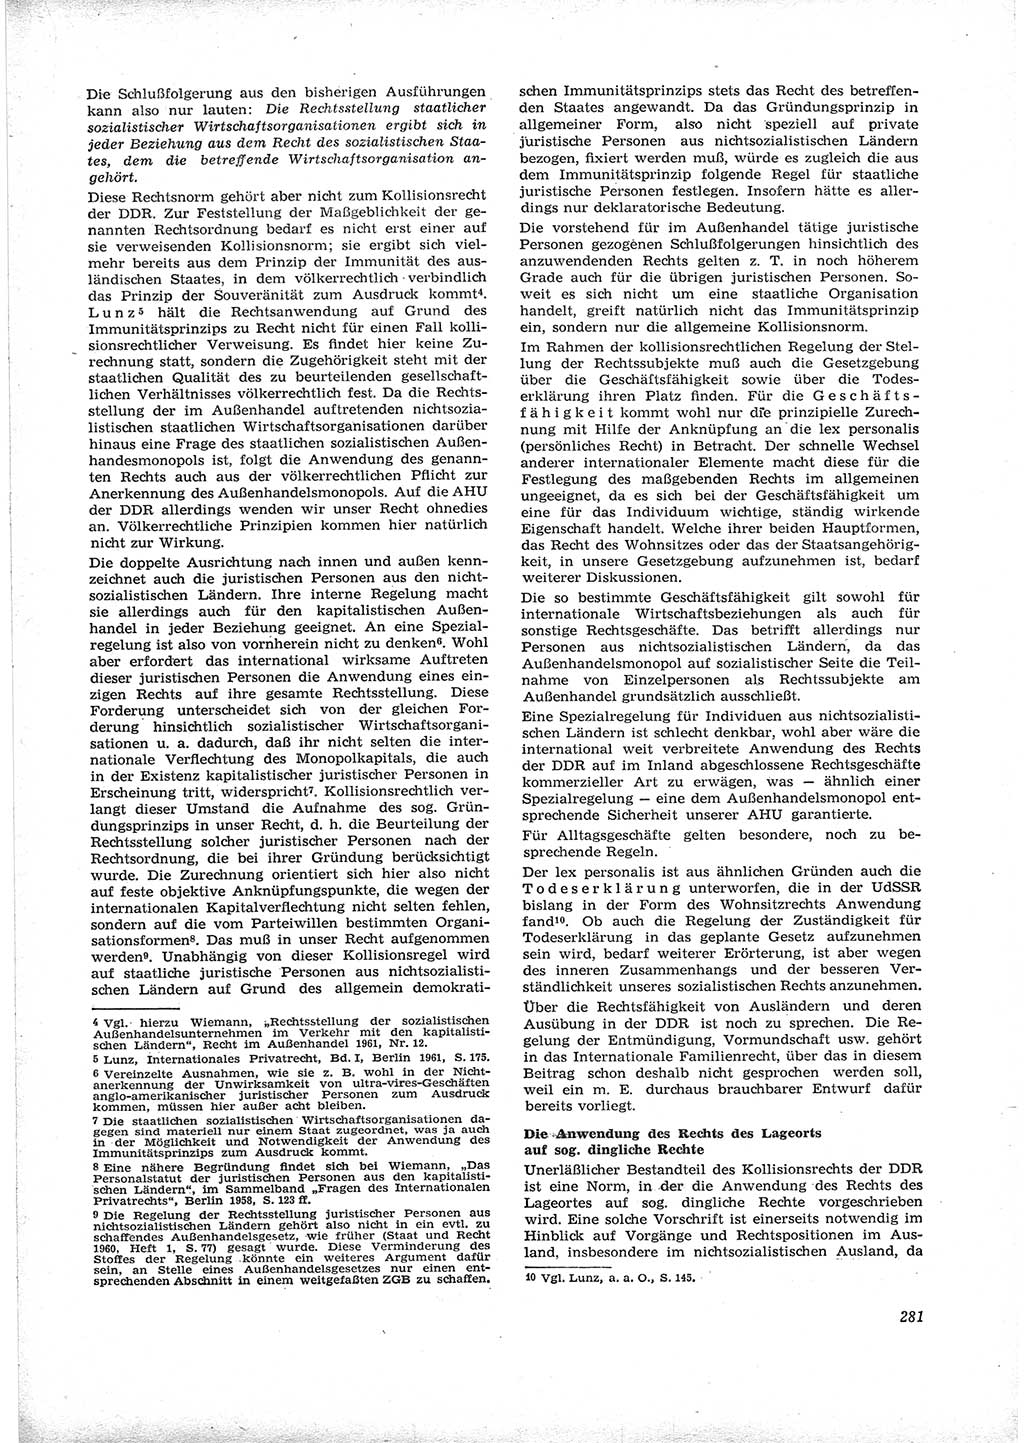 Neue Justiz (NJ), Zeitschrift für Recht und Rechtswissenschaft [Deutsche Demokratische Republik (DDR)], 16. Jahrgang 1962, Seite 281 (NJ DDR 1962, S. 281)